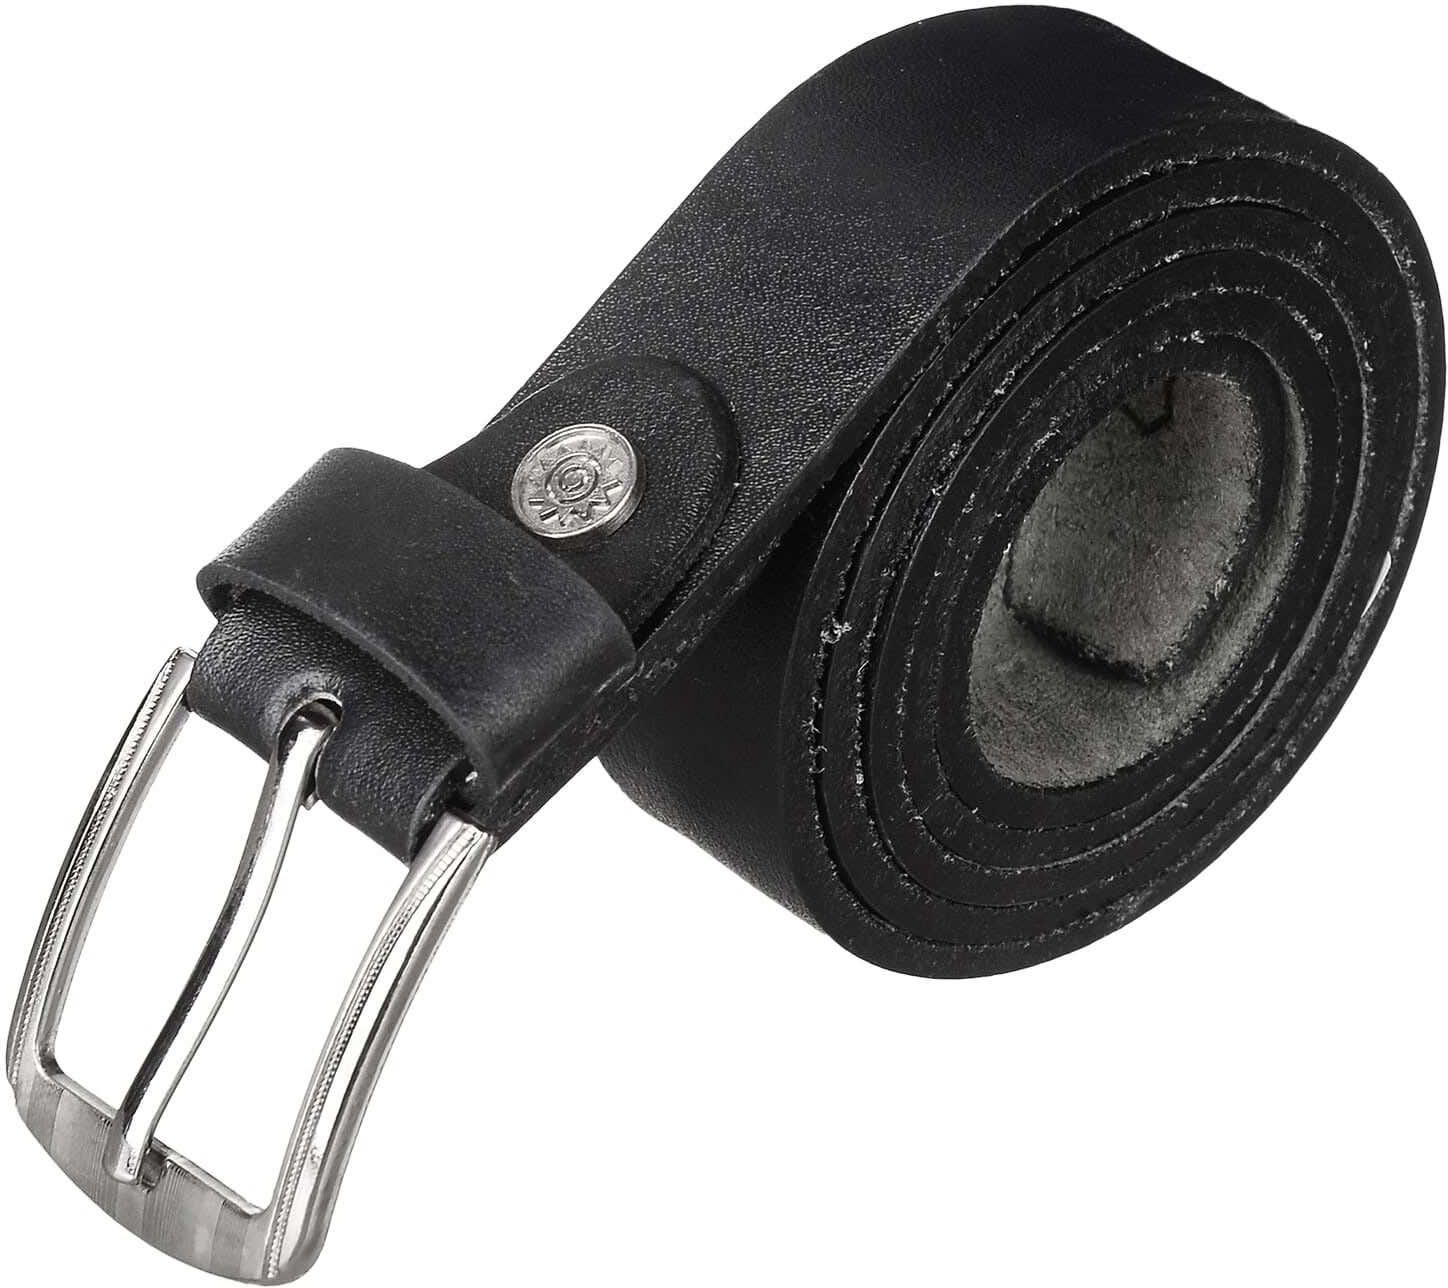 Get Golden Natural Leather Belt for Men, 120 cm - Black with best offers | Raneen.com